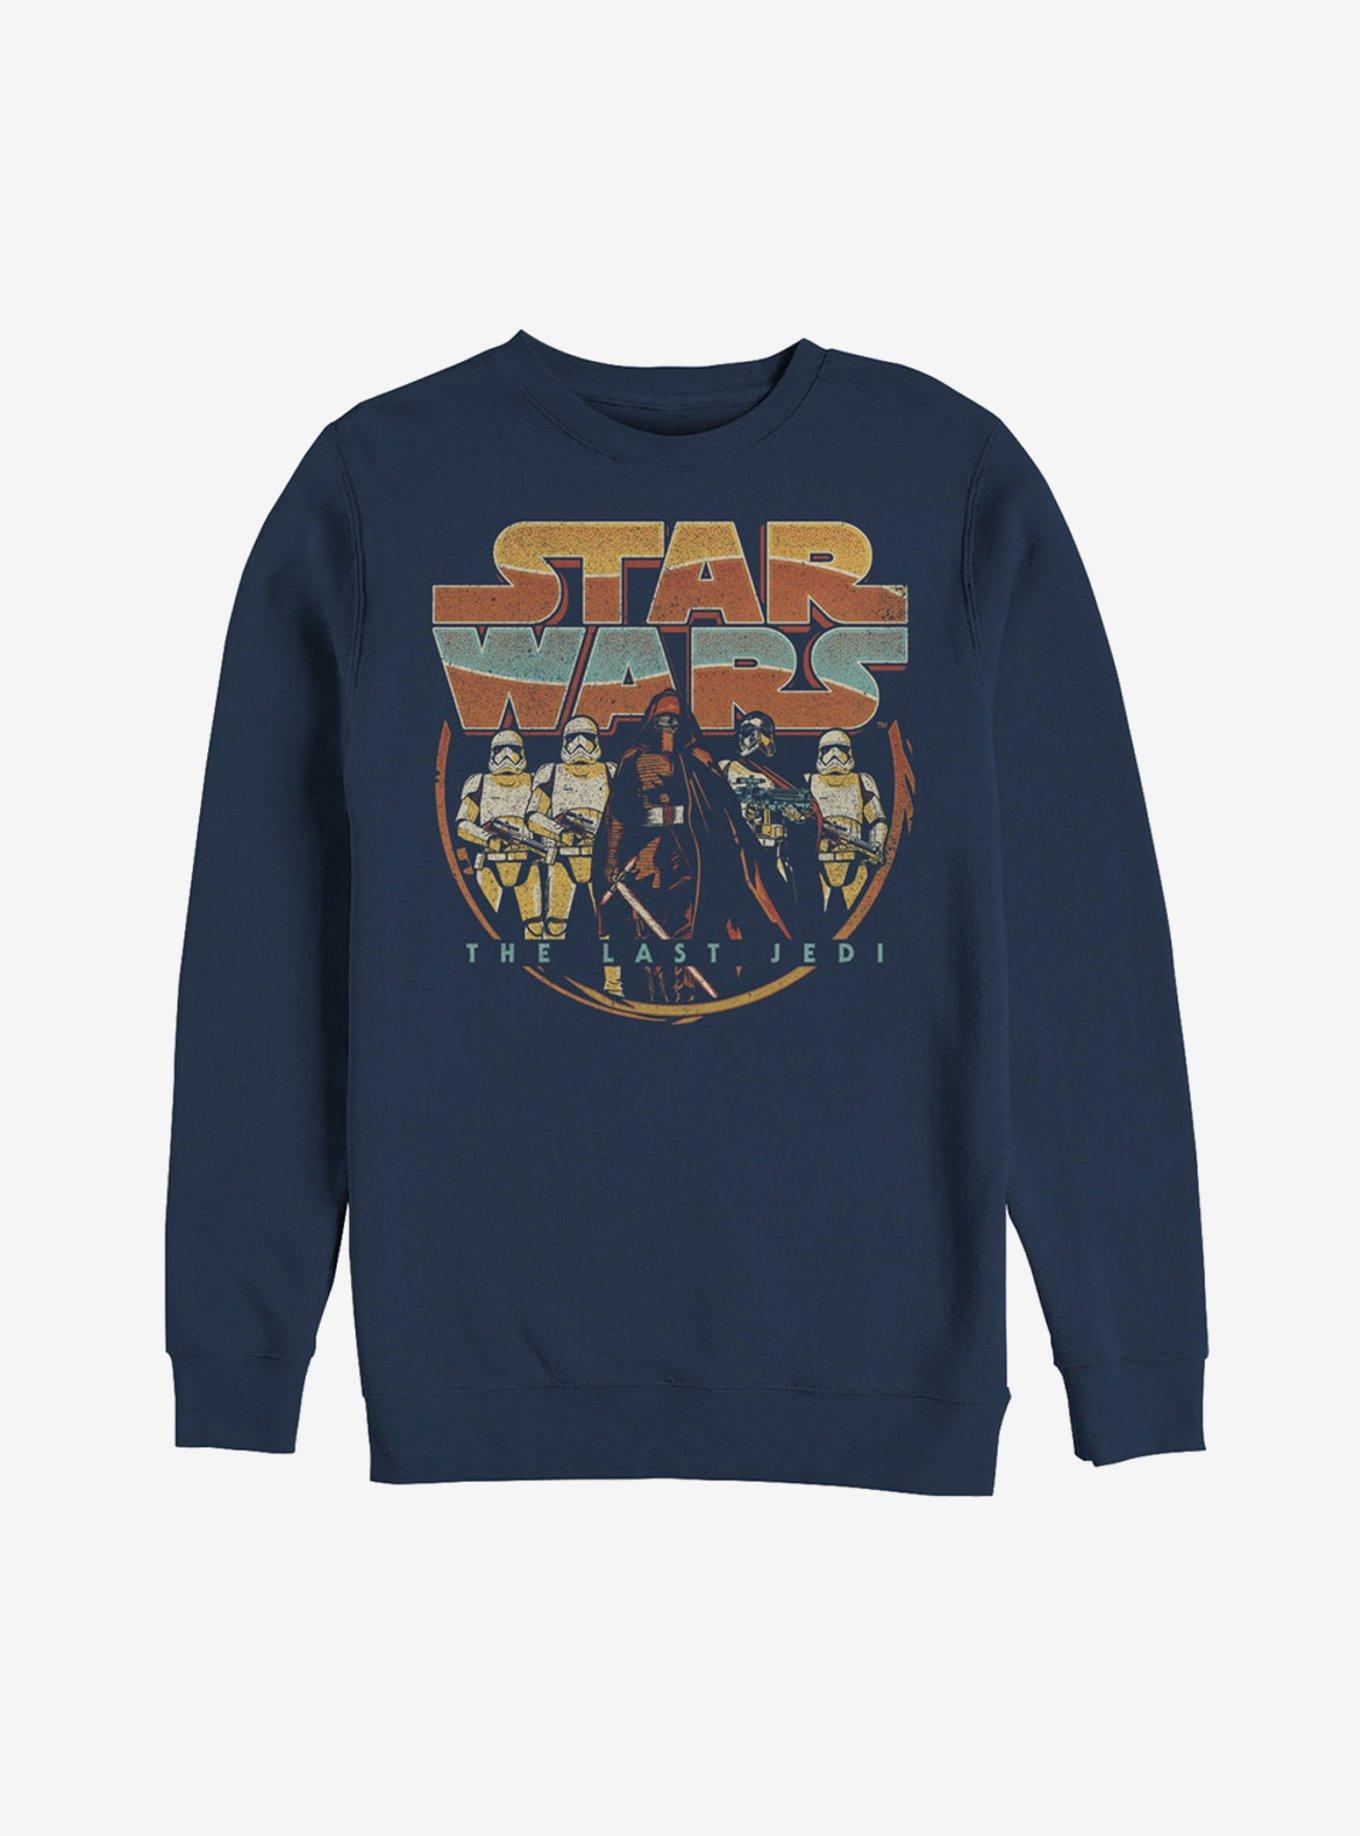 Star Wars First Order Retro Sweatshirt, NAVY, hi-res